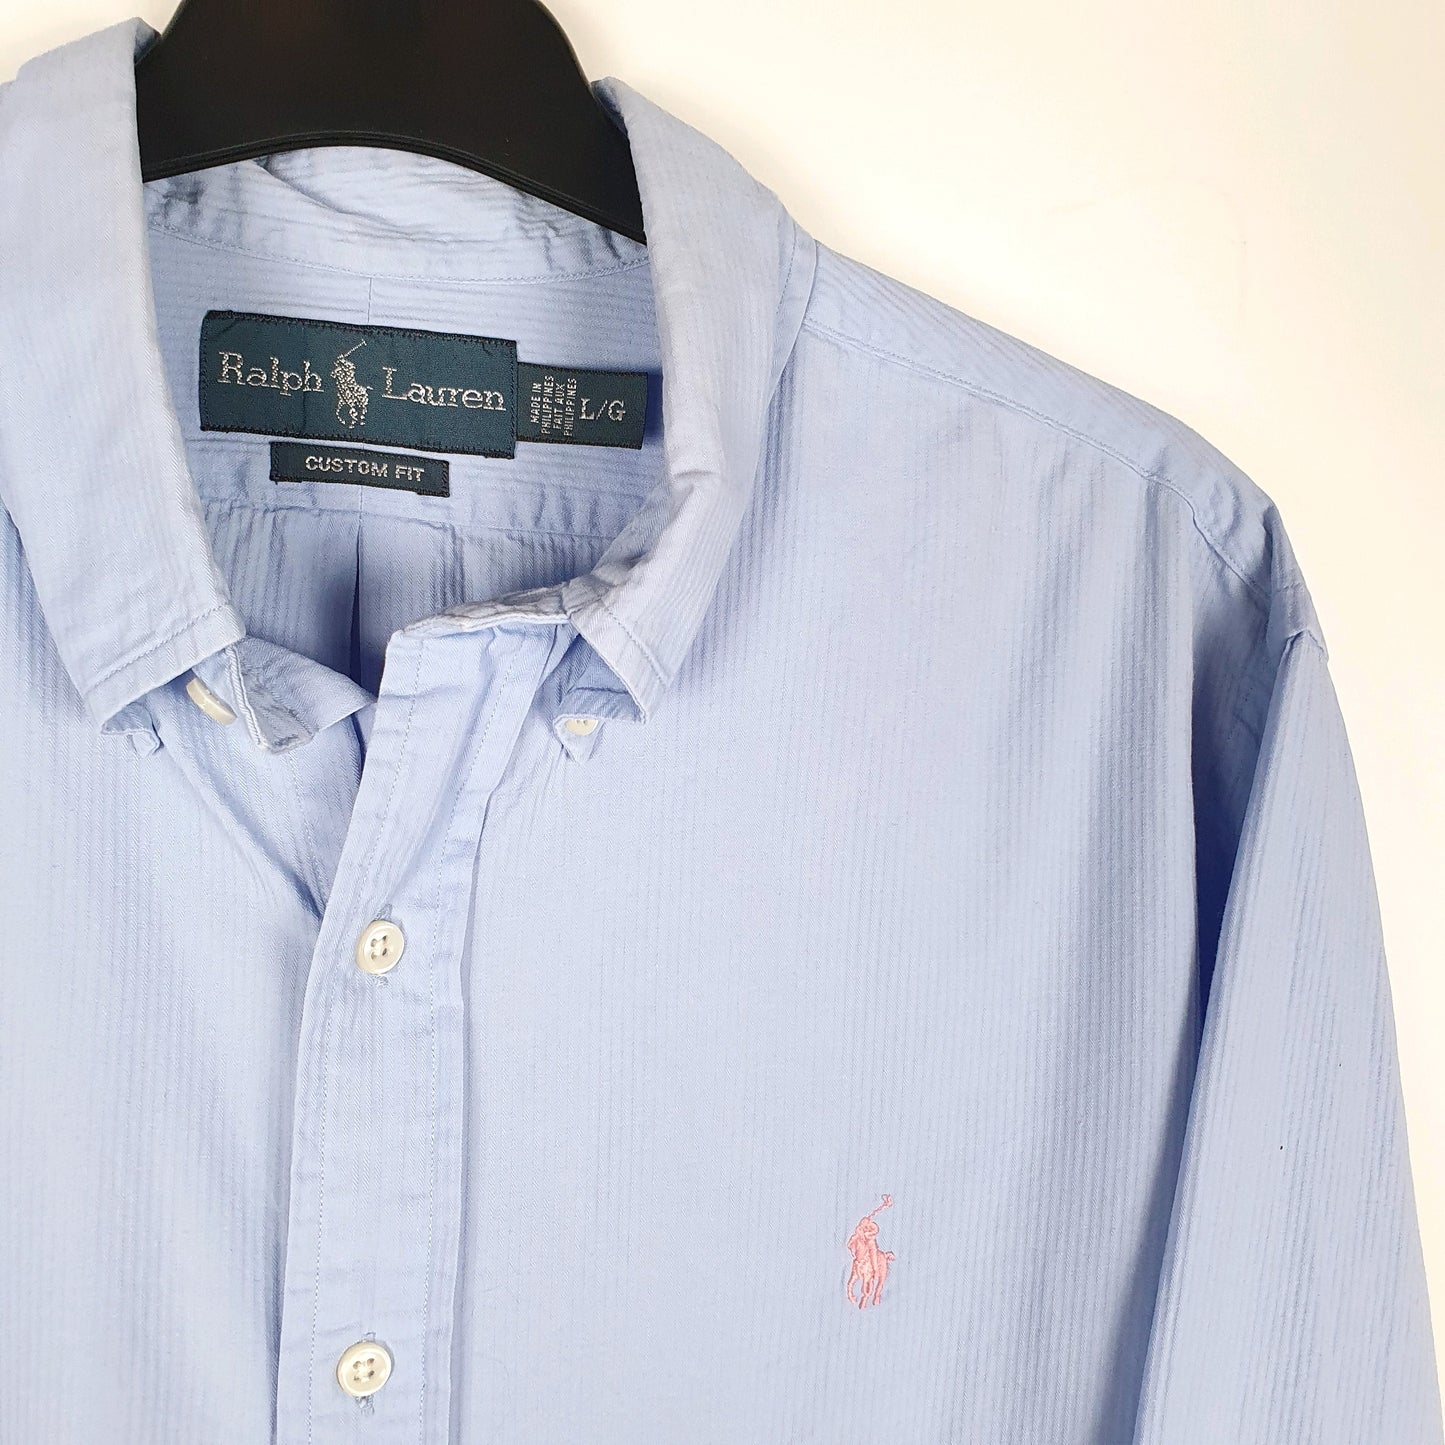 Polo Ralph Lauren Long Sleeve Custom Fit Shirt